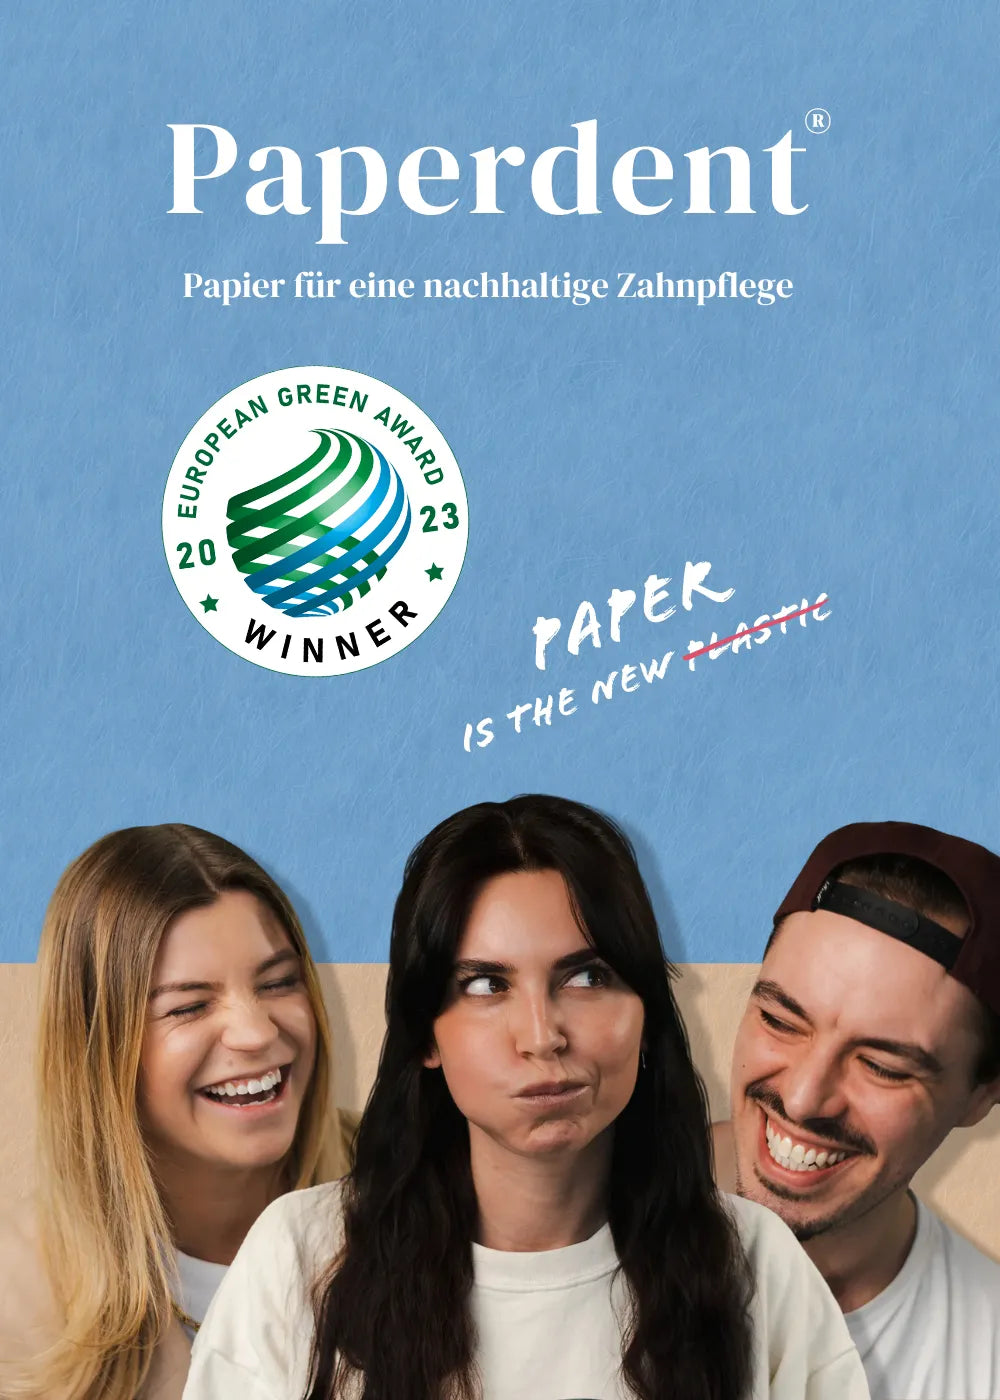 Drei Teammitglieder des Paperdent Teams lachen, eine Frau gurgelt mit der Mundspülung. Darüber befindet sich das Logo der Firma Paperdent und ein Logo des European Green Awards, den die Produktreihe von Paperdent gewonnen hat.